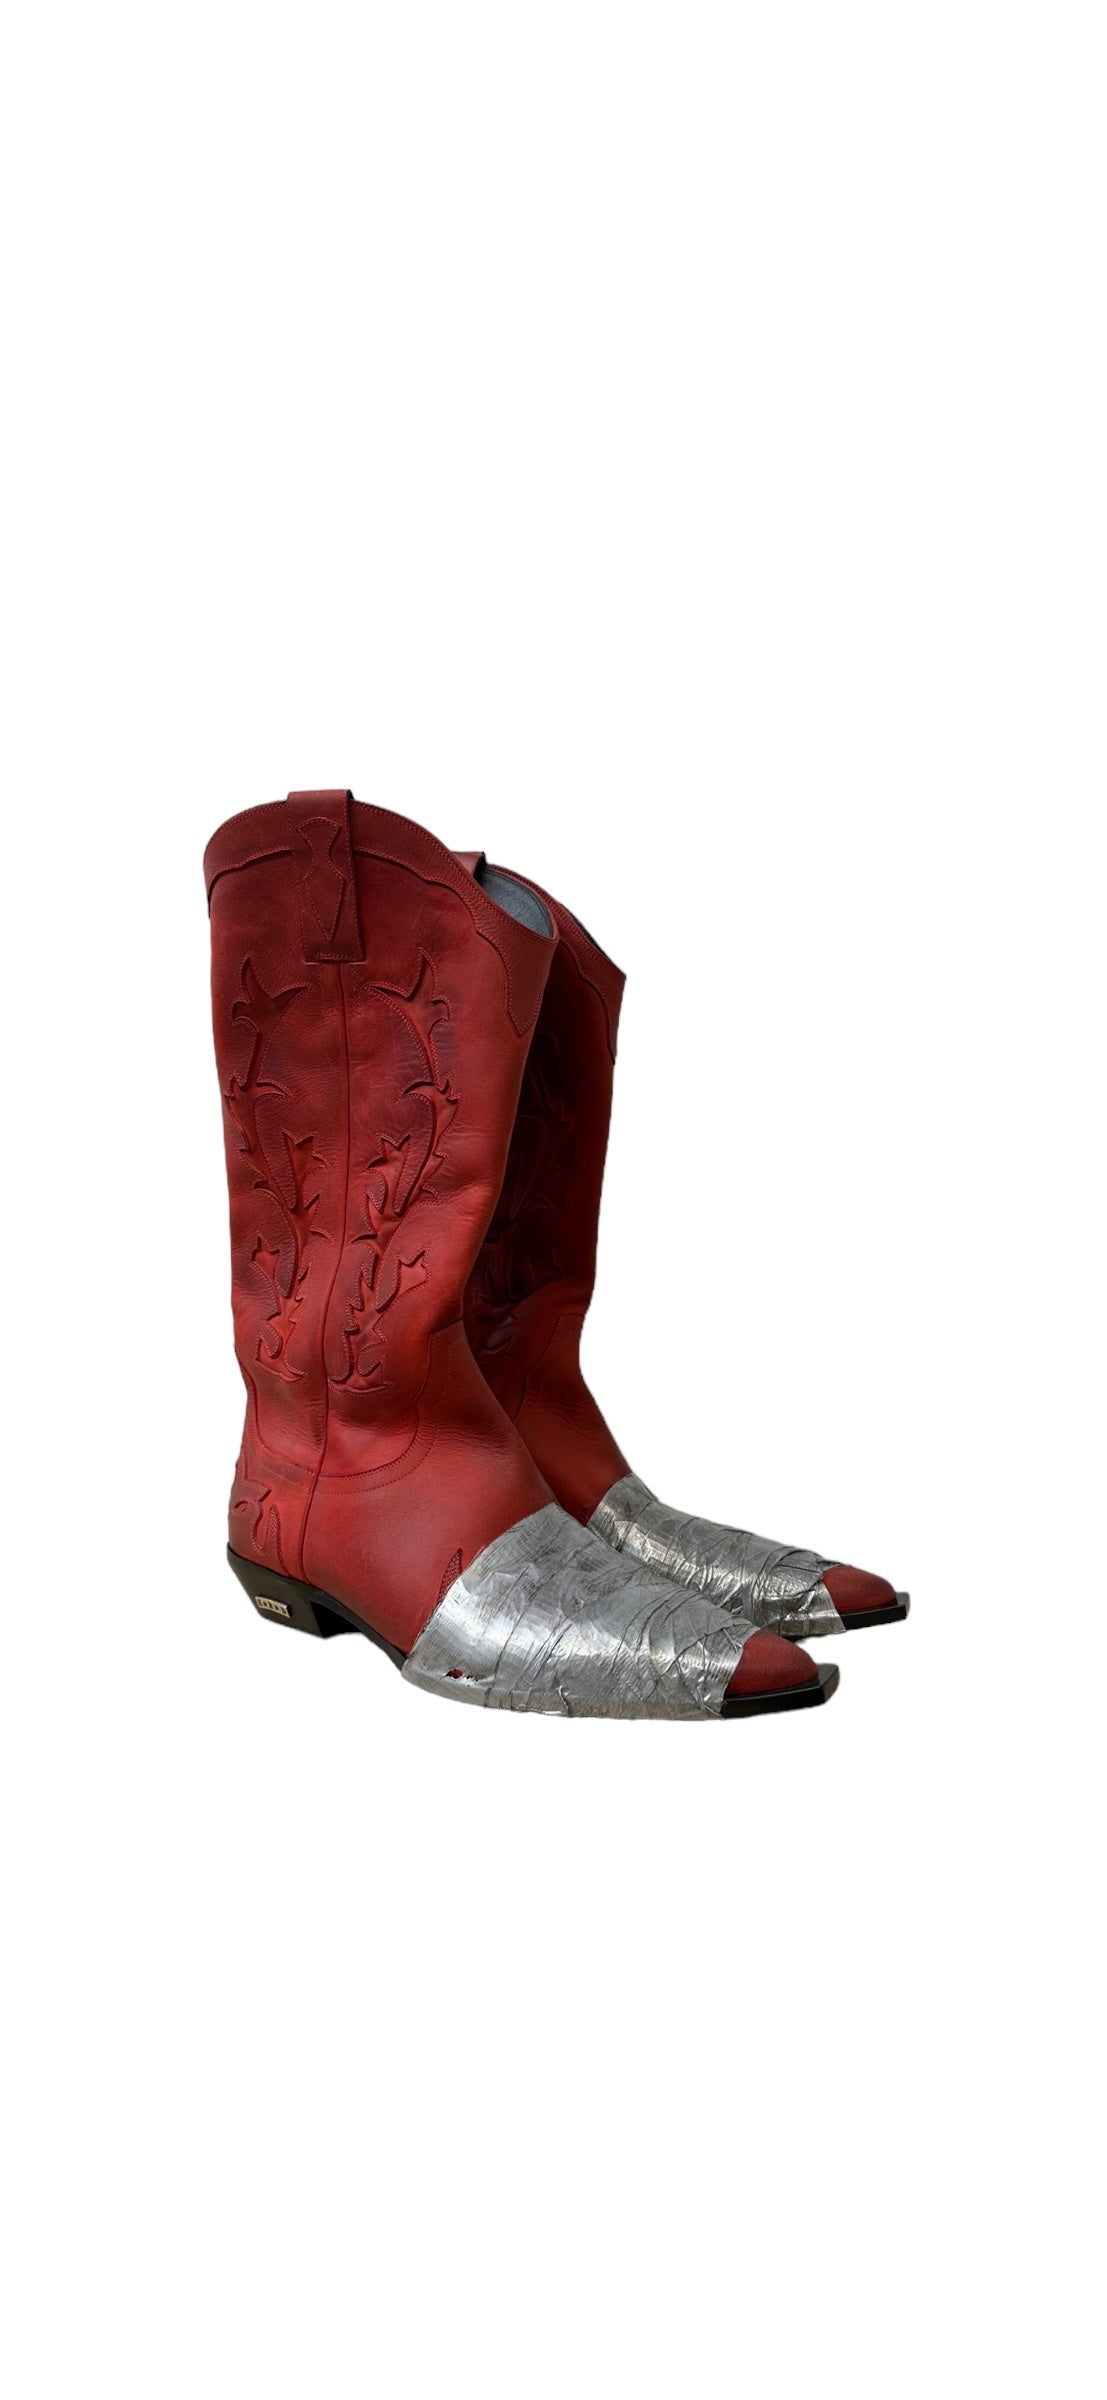 Enfants Riches Demprimes Paneled Leather Cowboy Boots